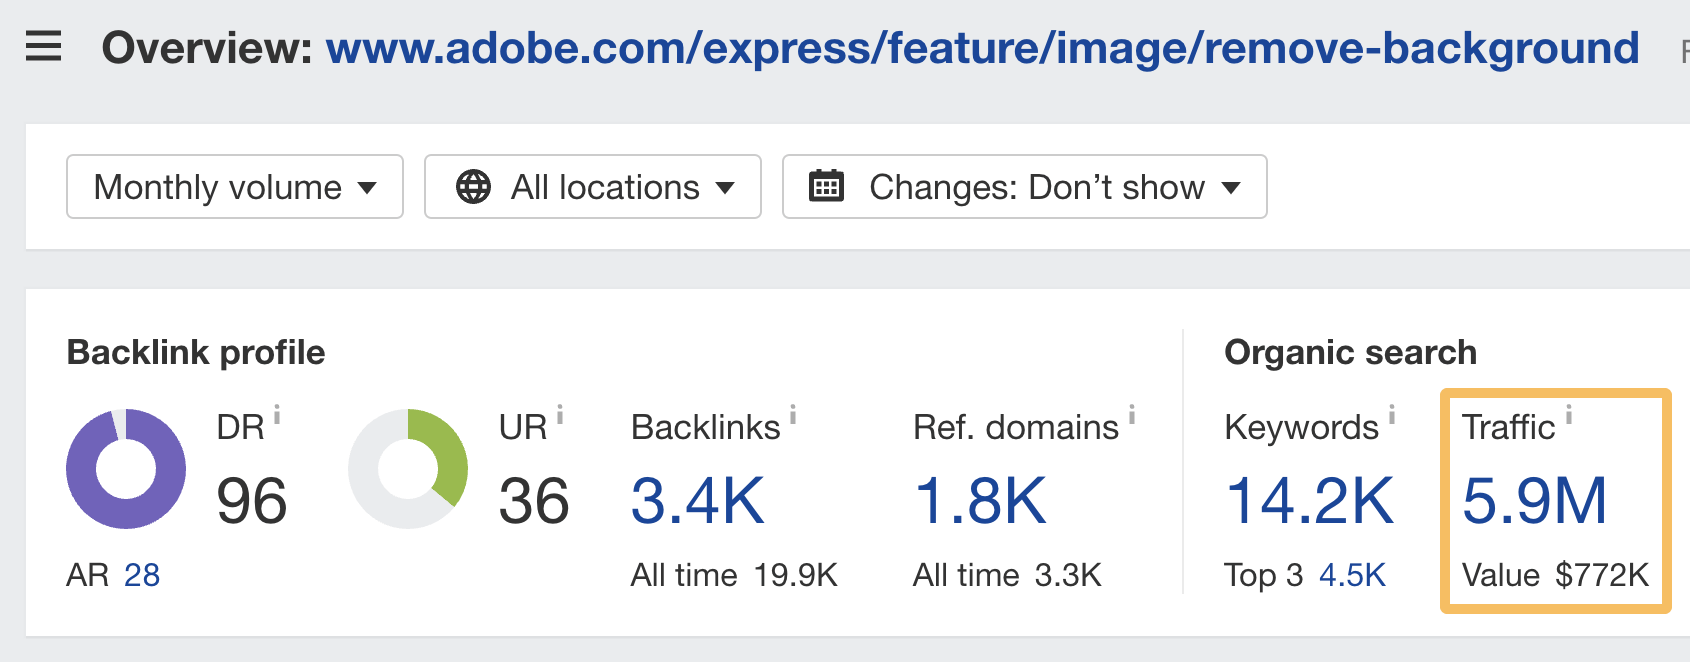 Lưu lượng tìm kiếm không phải trả tiền đến trang web tạo lưu lượng truy cập của Adobe, thông qua Site Explorer của Ahrefs